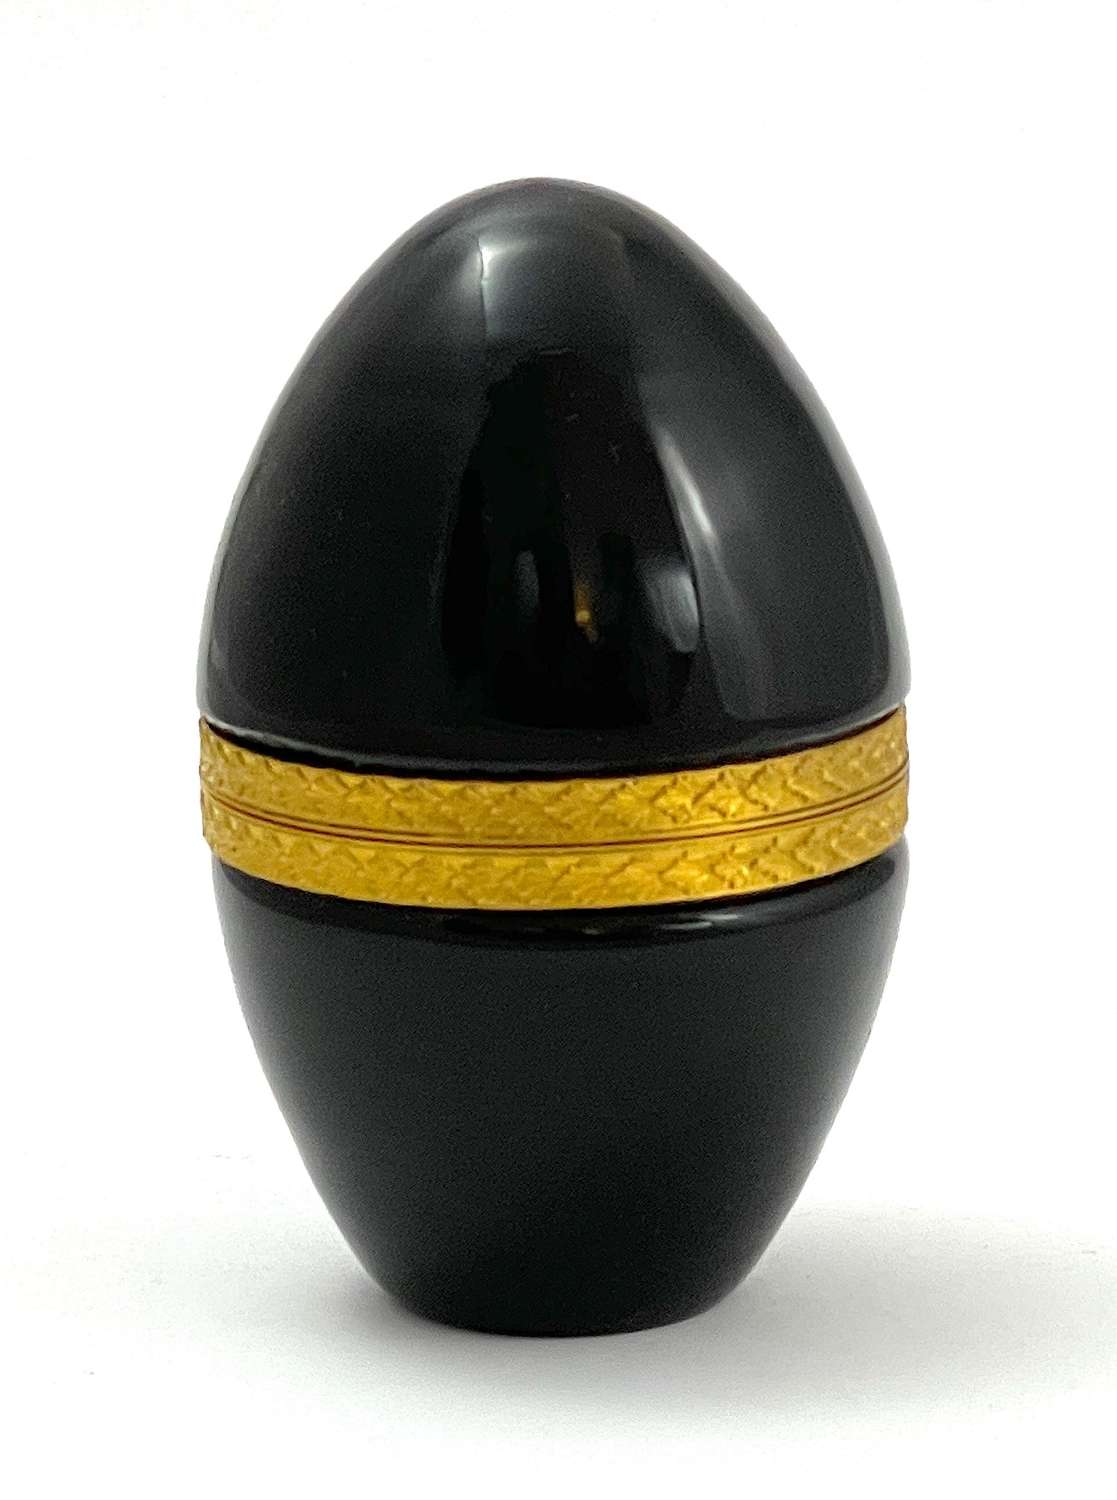 Antique Murano Black Opaline Glass Egg Casket Box